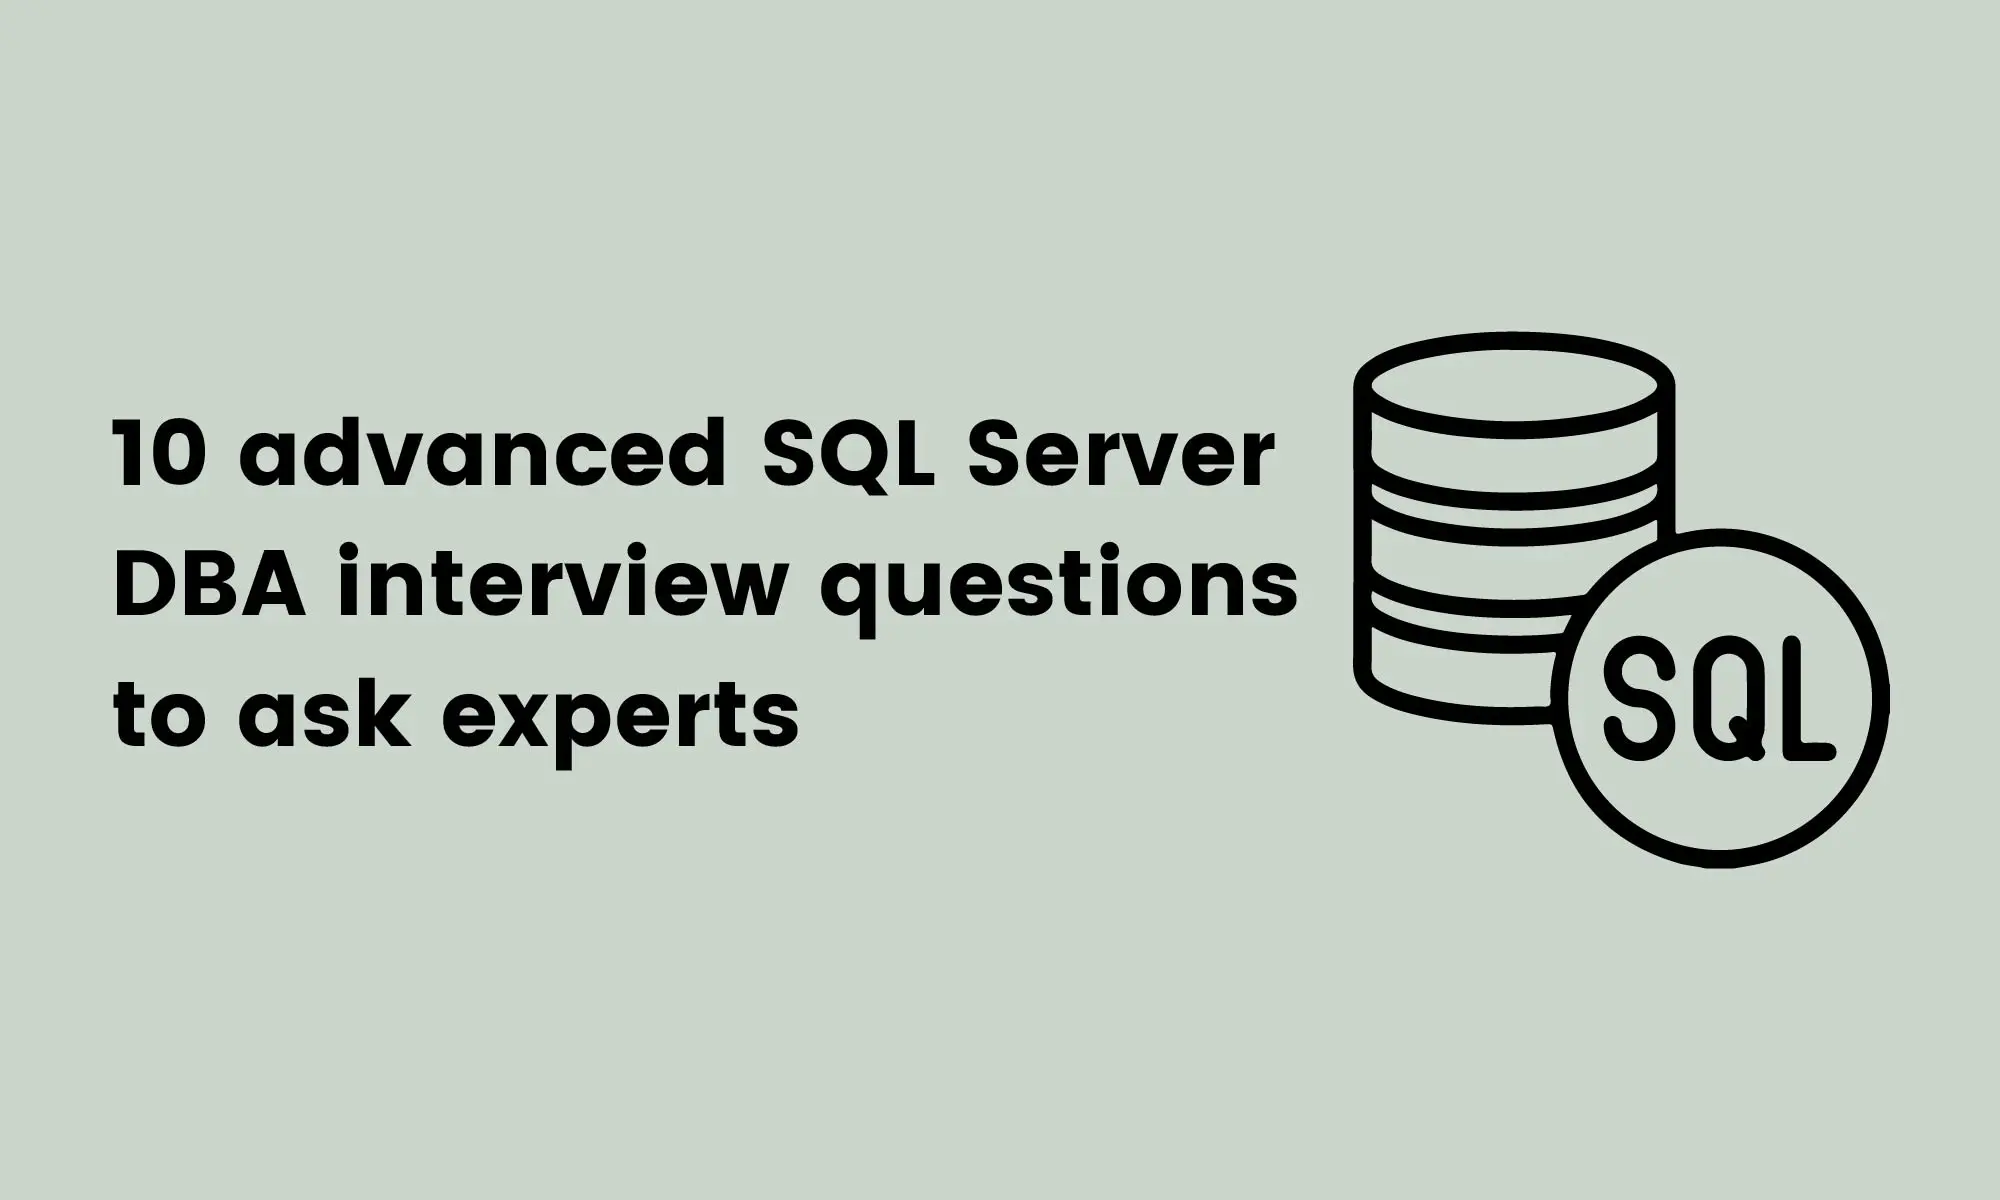 10 advanced SQL Server DBA interview questions